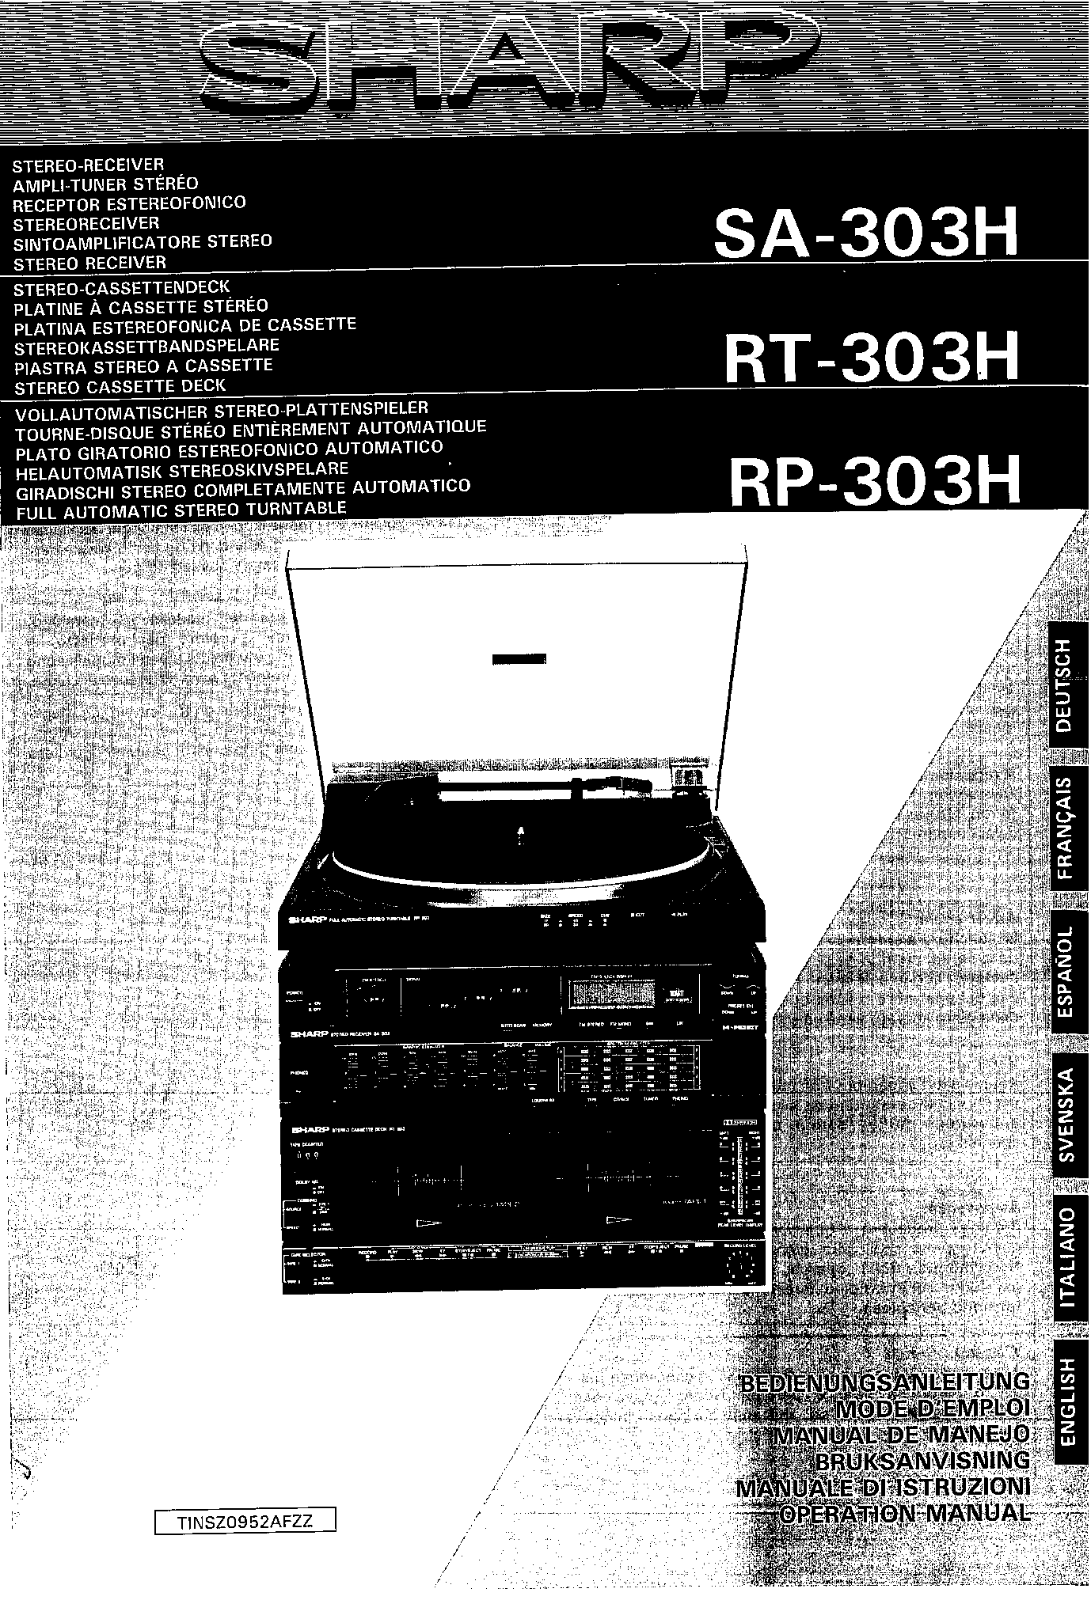 Sharp RT-303H, SA-303H Manual